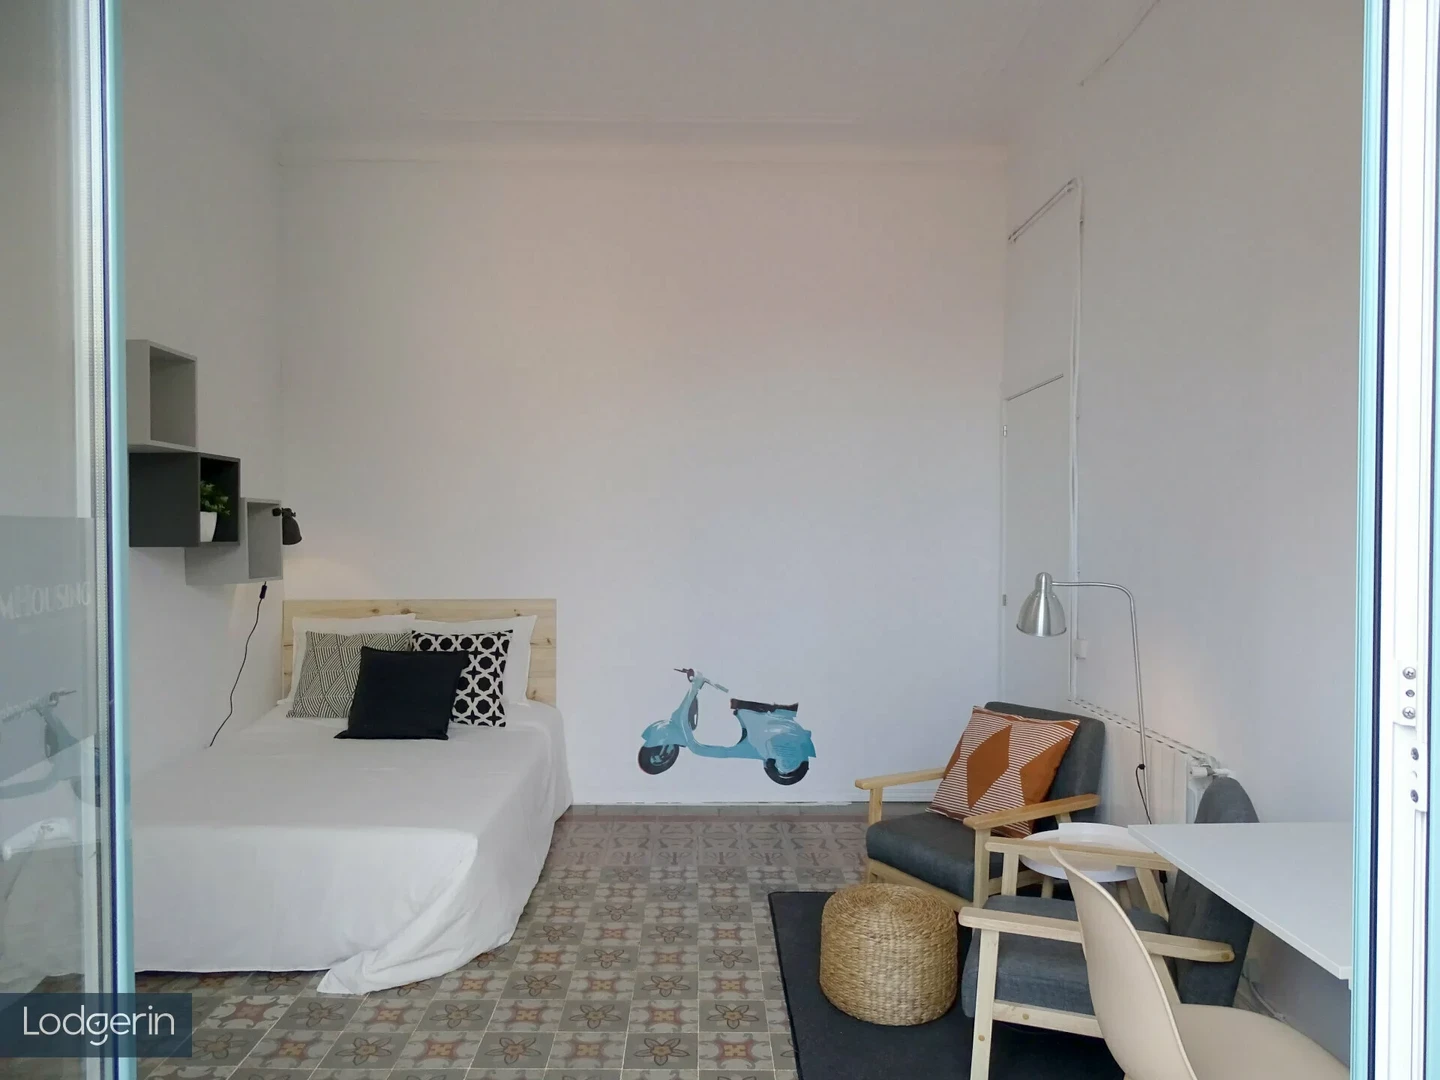 Barcelona de kiralık ucuz paylaşımlı oda